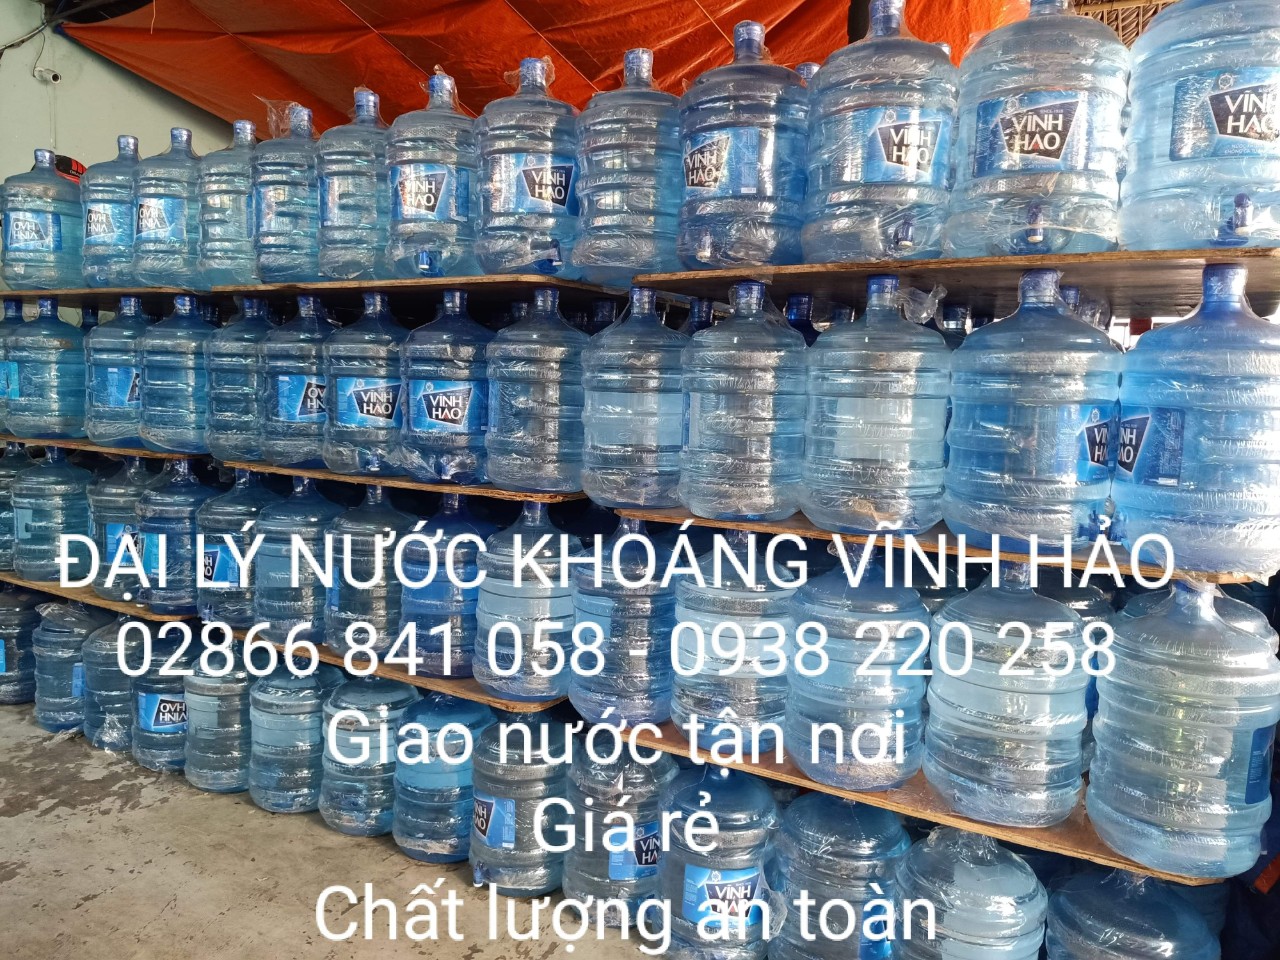 Nước uống đóng bình 20l Vĩnh Hảo bán chạy nhất tại TPHCM